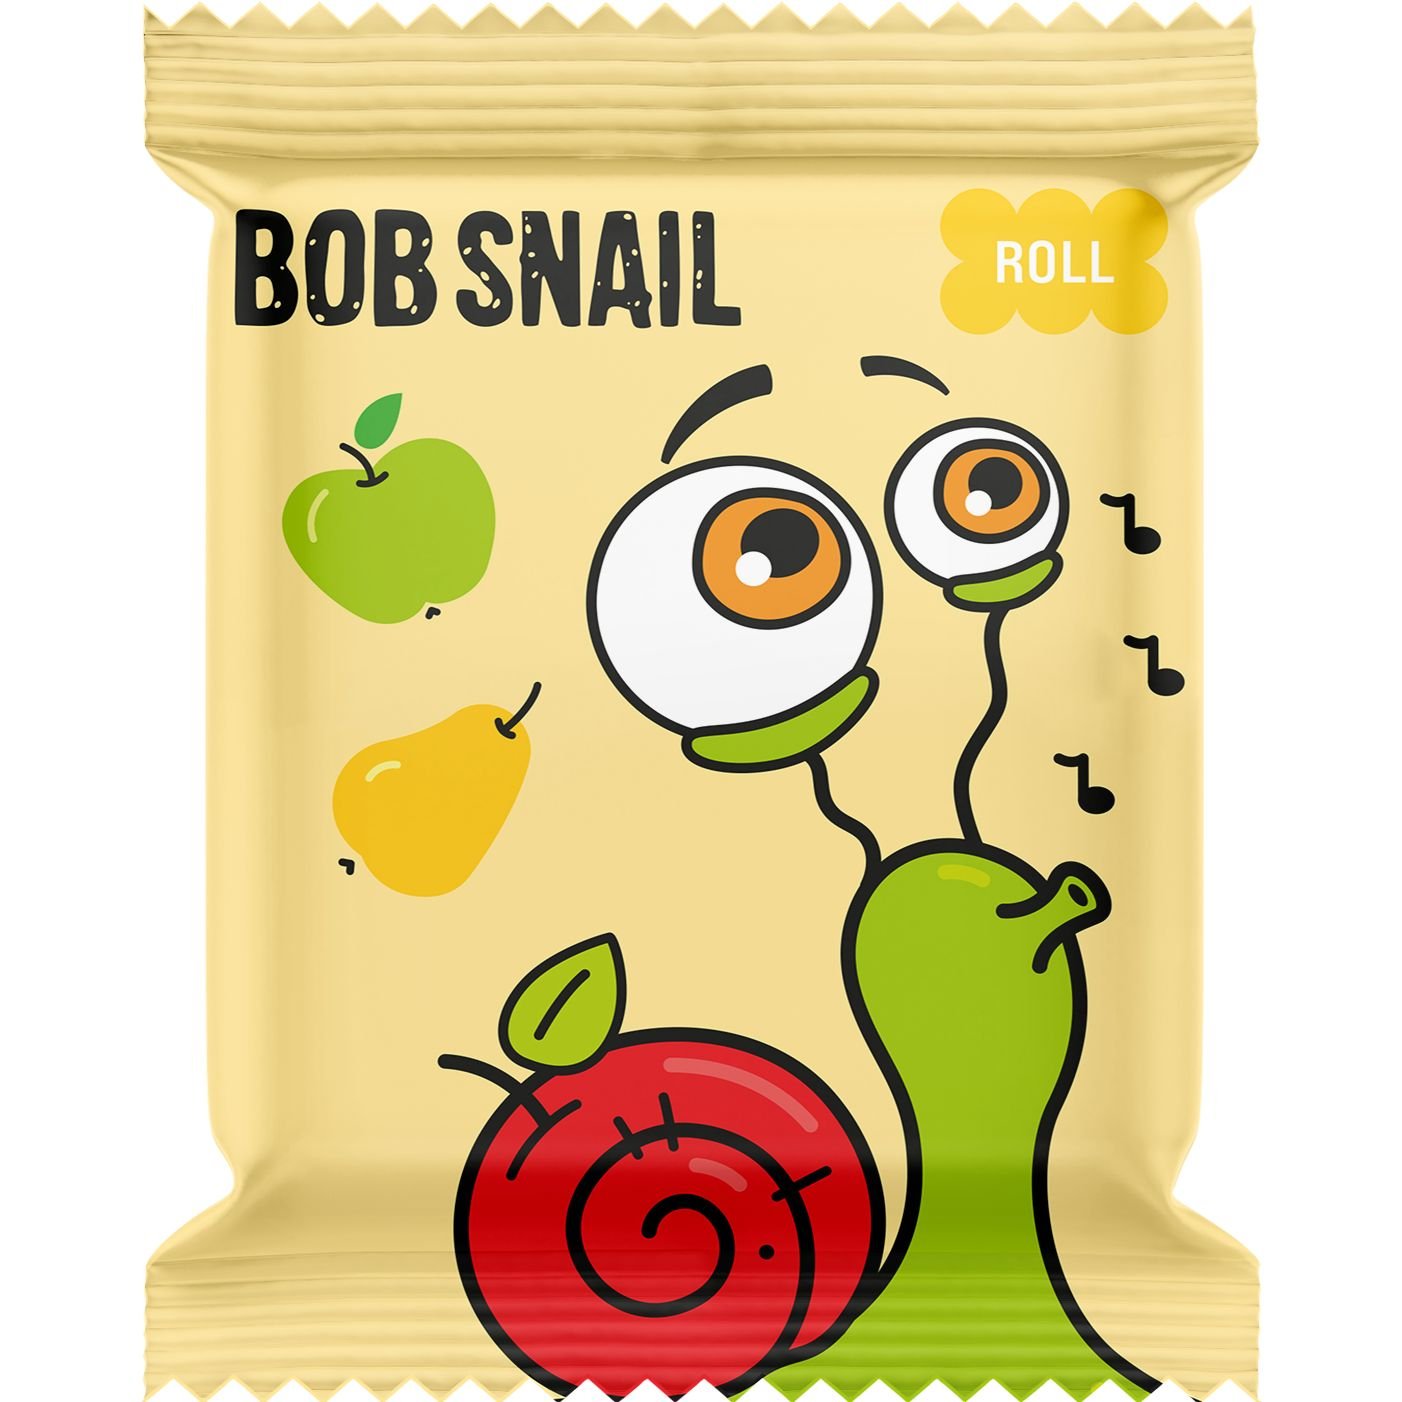 Фруктовые яблочно-грушевые конфеты Bob Snail 100 г (10 шт. х 10 г) - фото 2